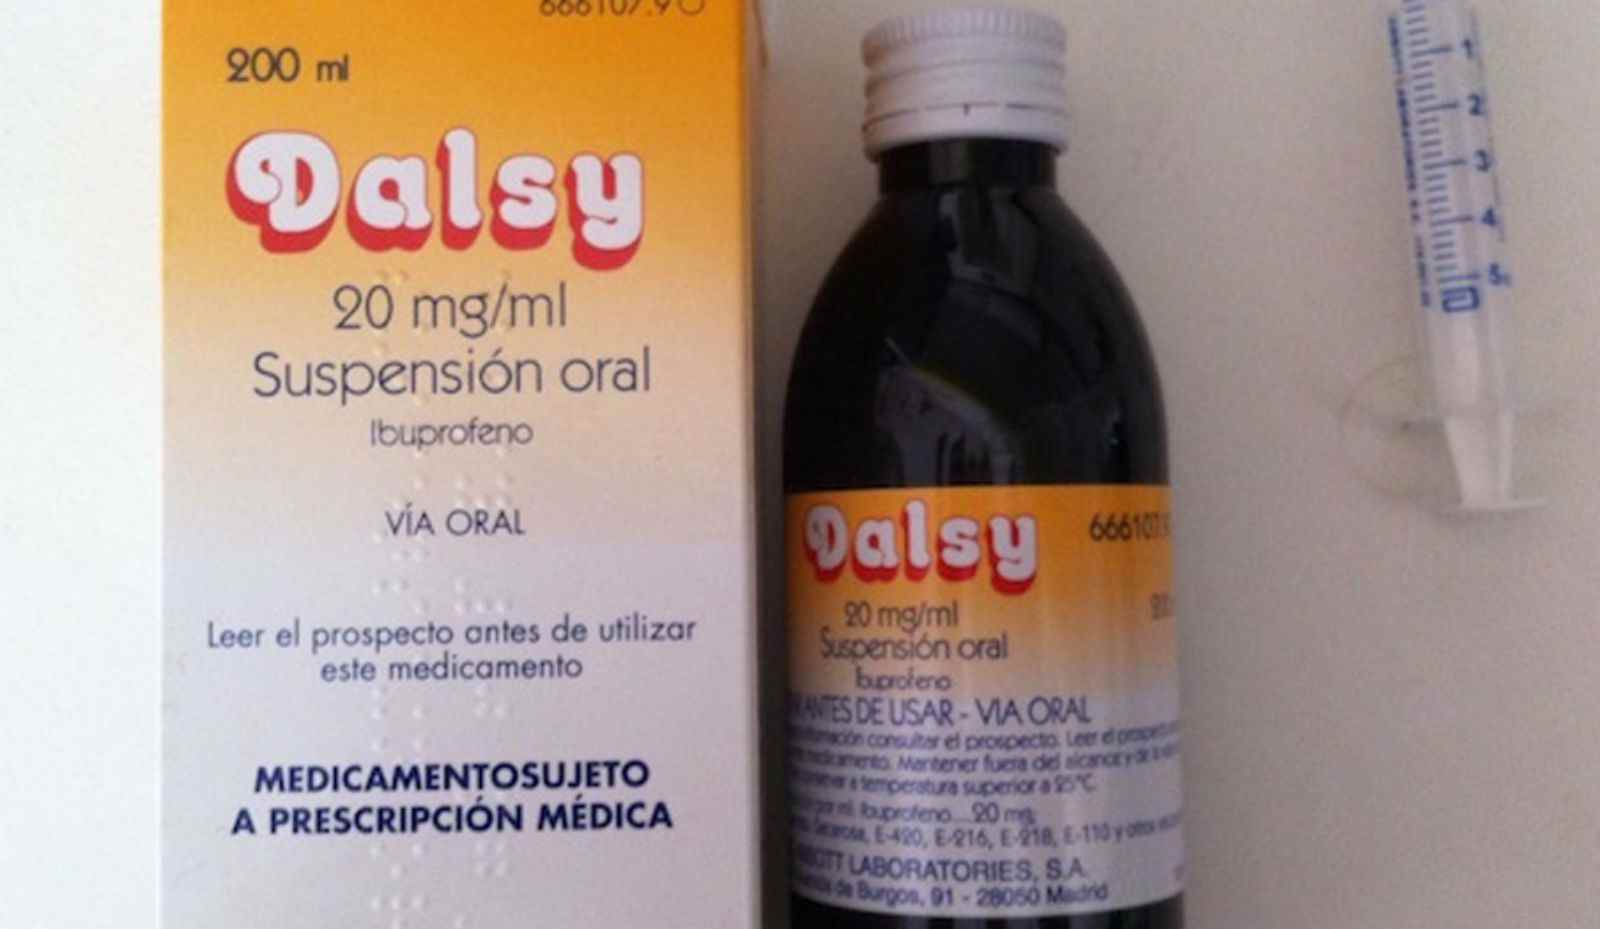 Les farmàcies catalanes es queden sense 'Dalsy'